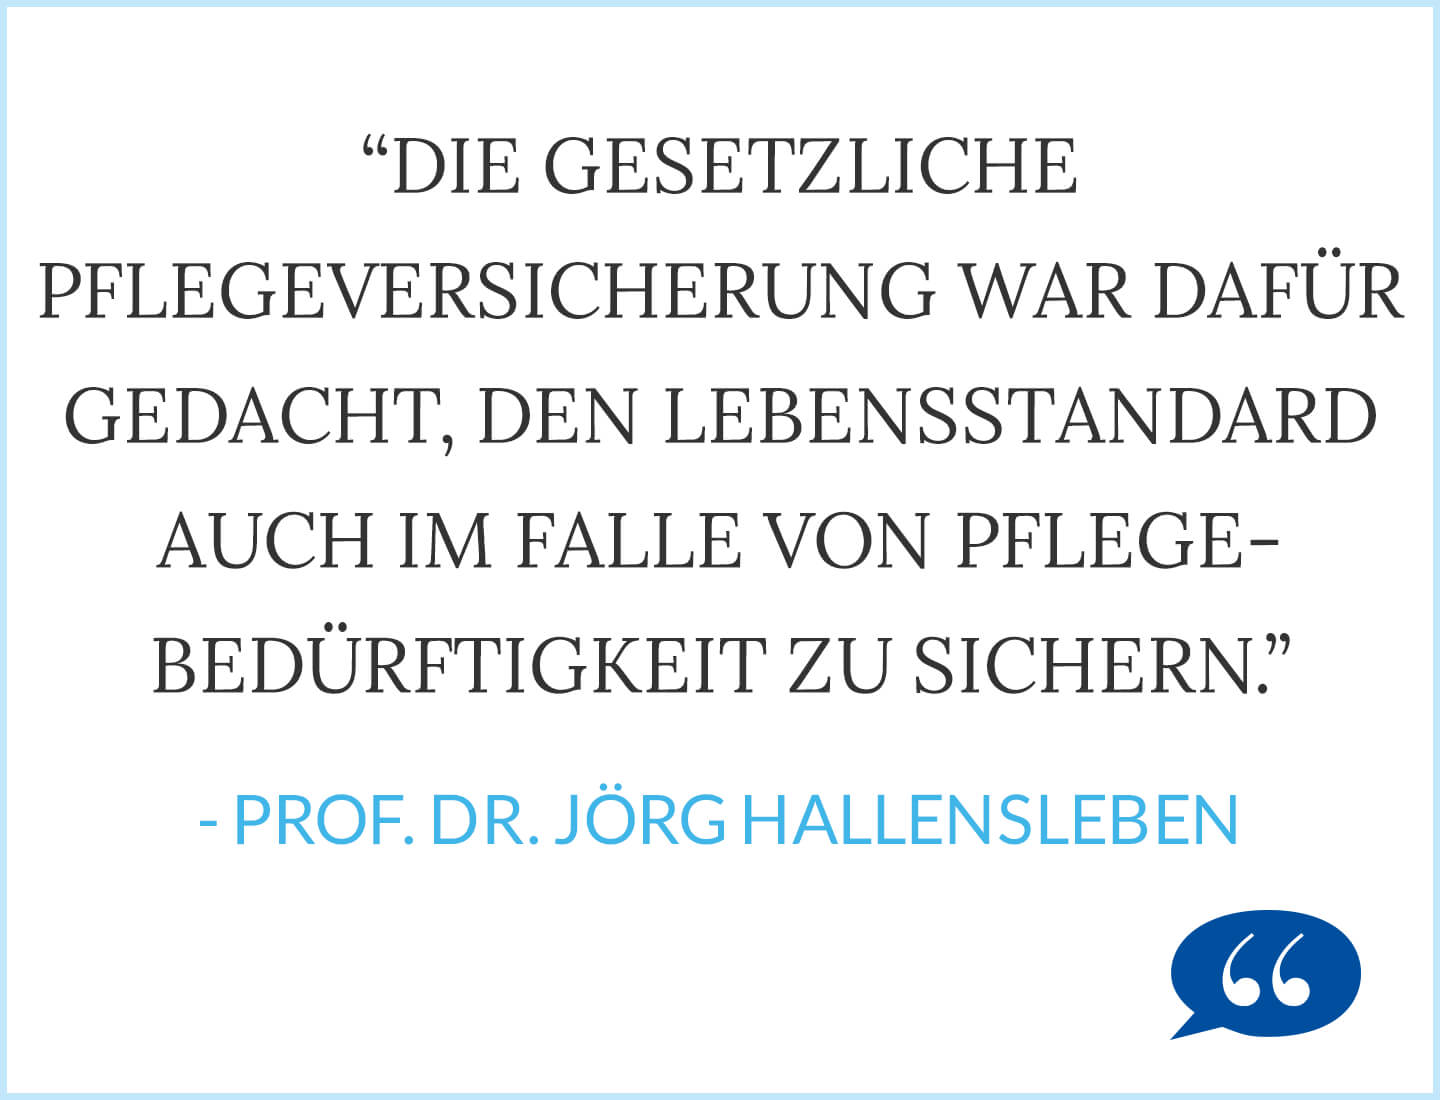 Zitat: Die gesetzliche Pflegeversicherung war dafür gedacht, den Lebensstandard auch im Falle von Pflegebedürftigkeit zu sichern. - Prof. Dr. Jörg Hallensleben